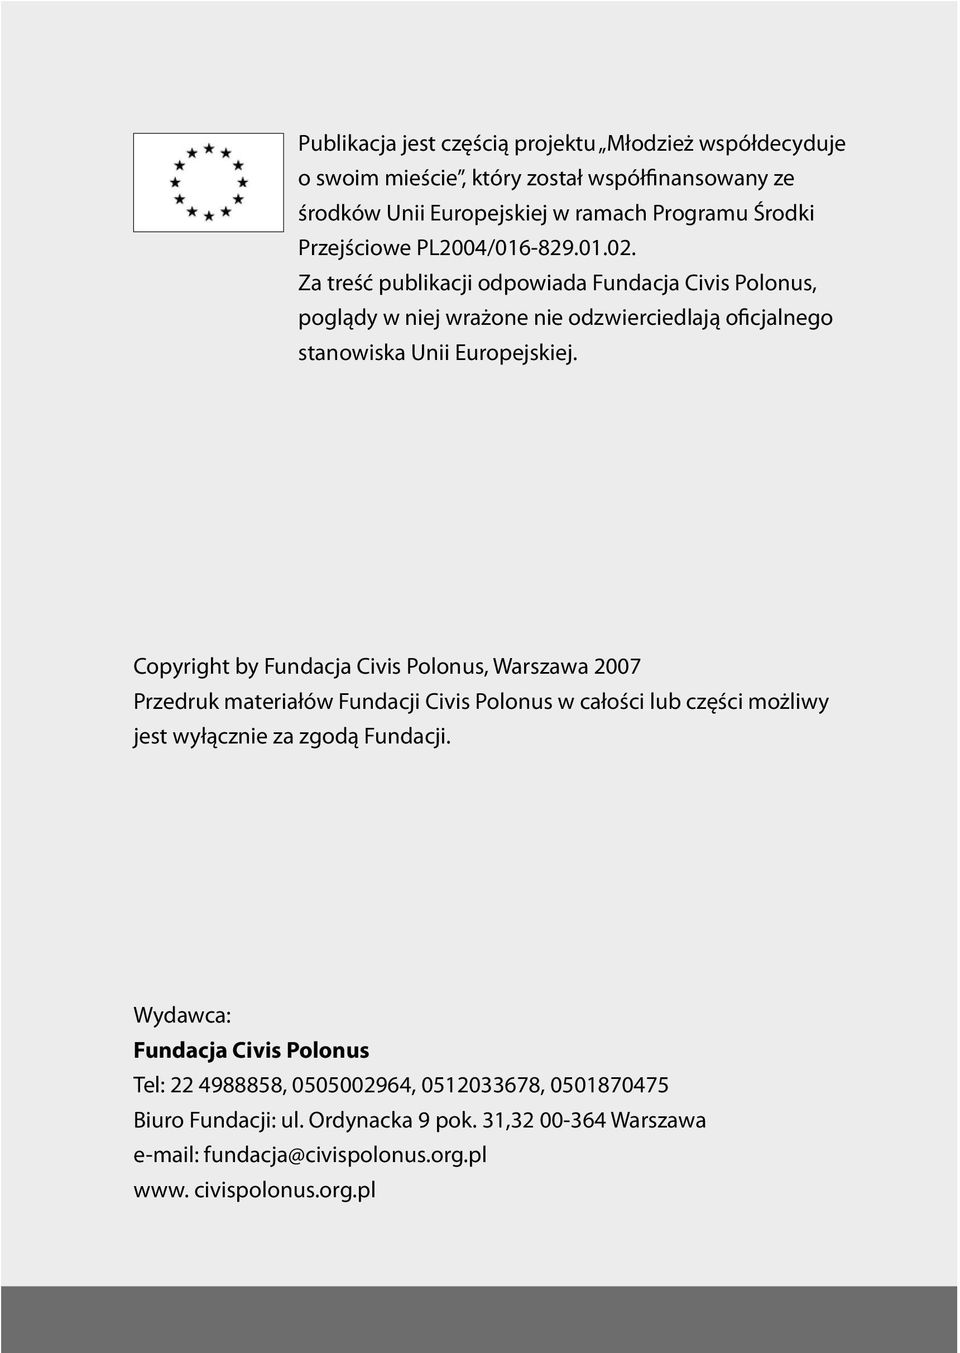 Copyright by Fundacja Civis Polonus, Warszawa 2007 Przedruk materiałów Fundacji Civis Polonus w całości lub części możliwy jest wyłącznie za zgodą Fundacji.